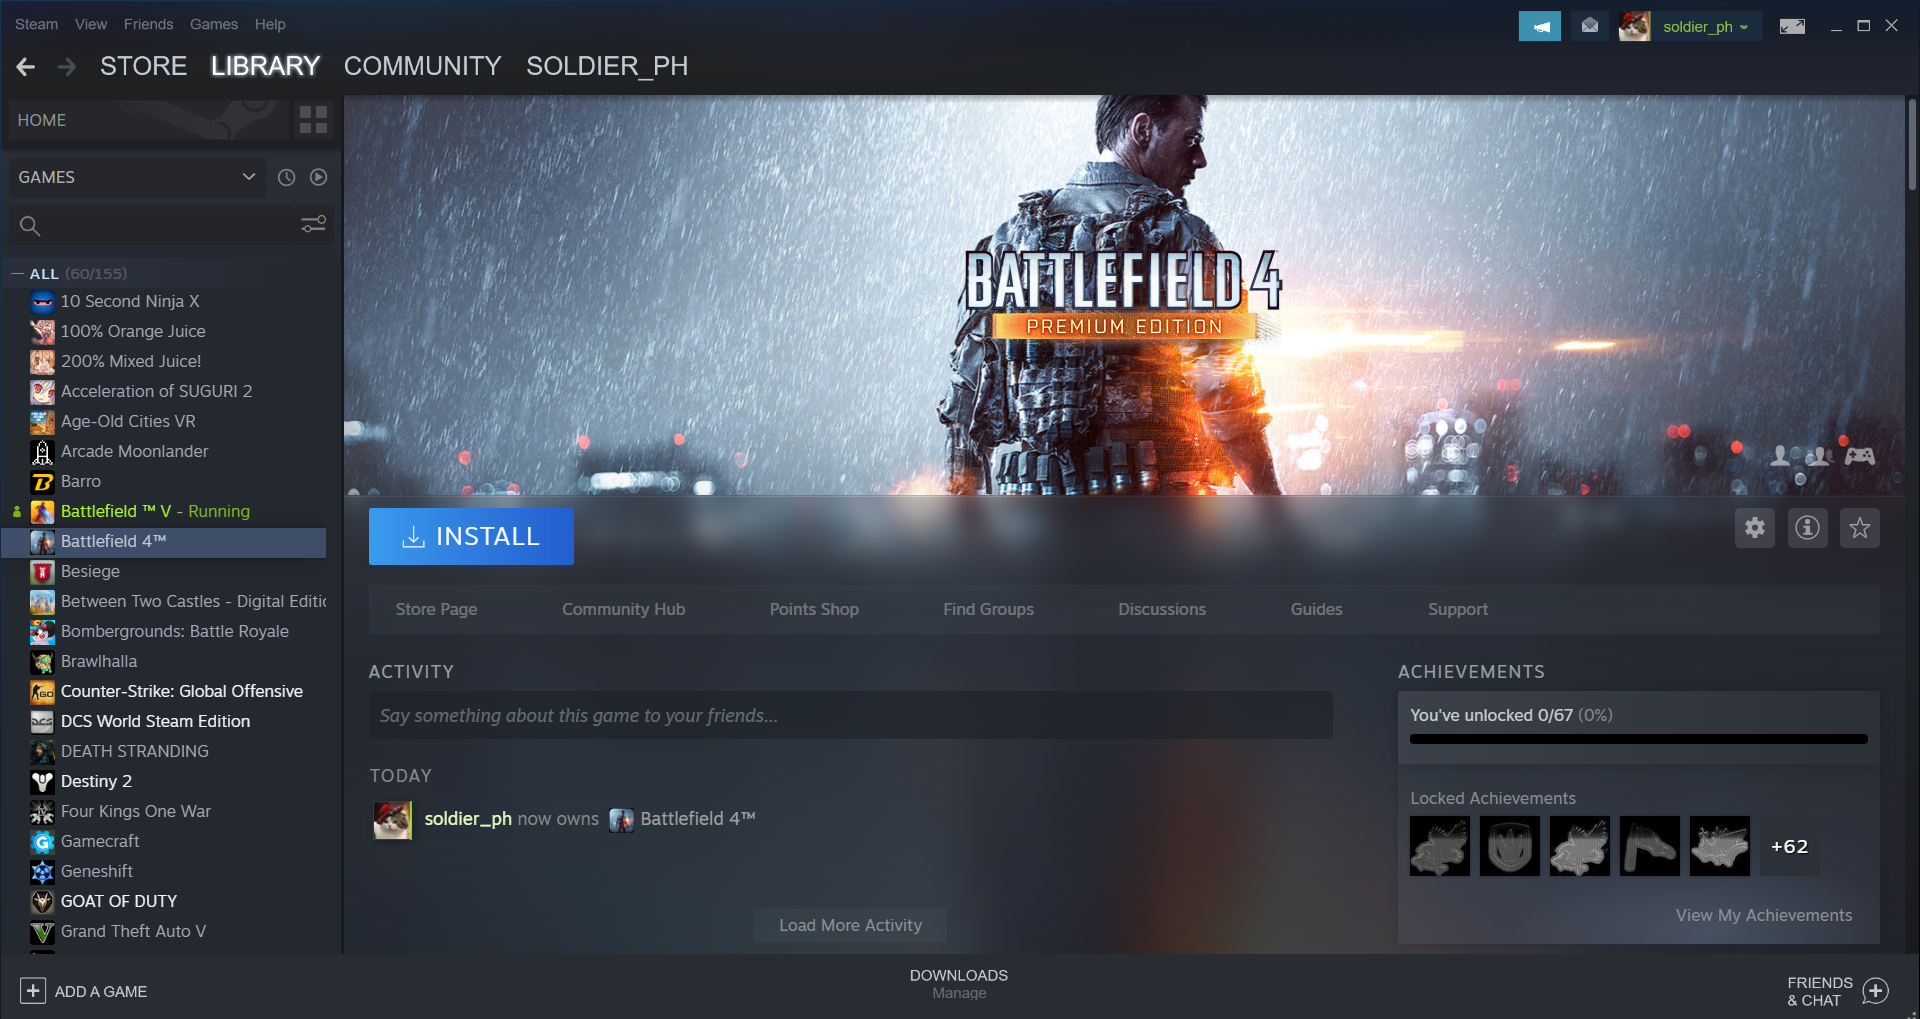 Battlefield 4 is 80% off on Steam - Hot Deals - Linus Tech Tips